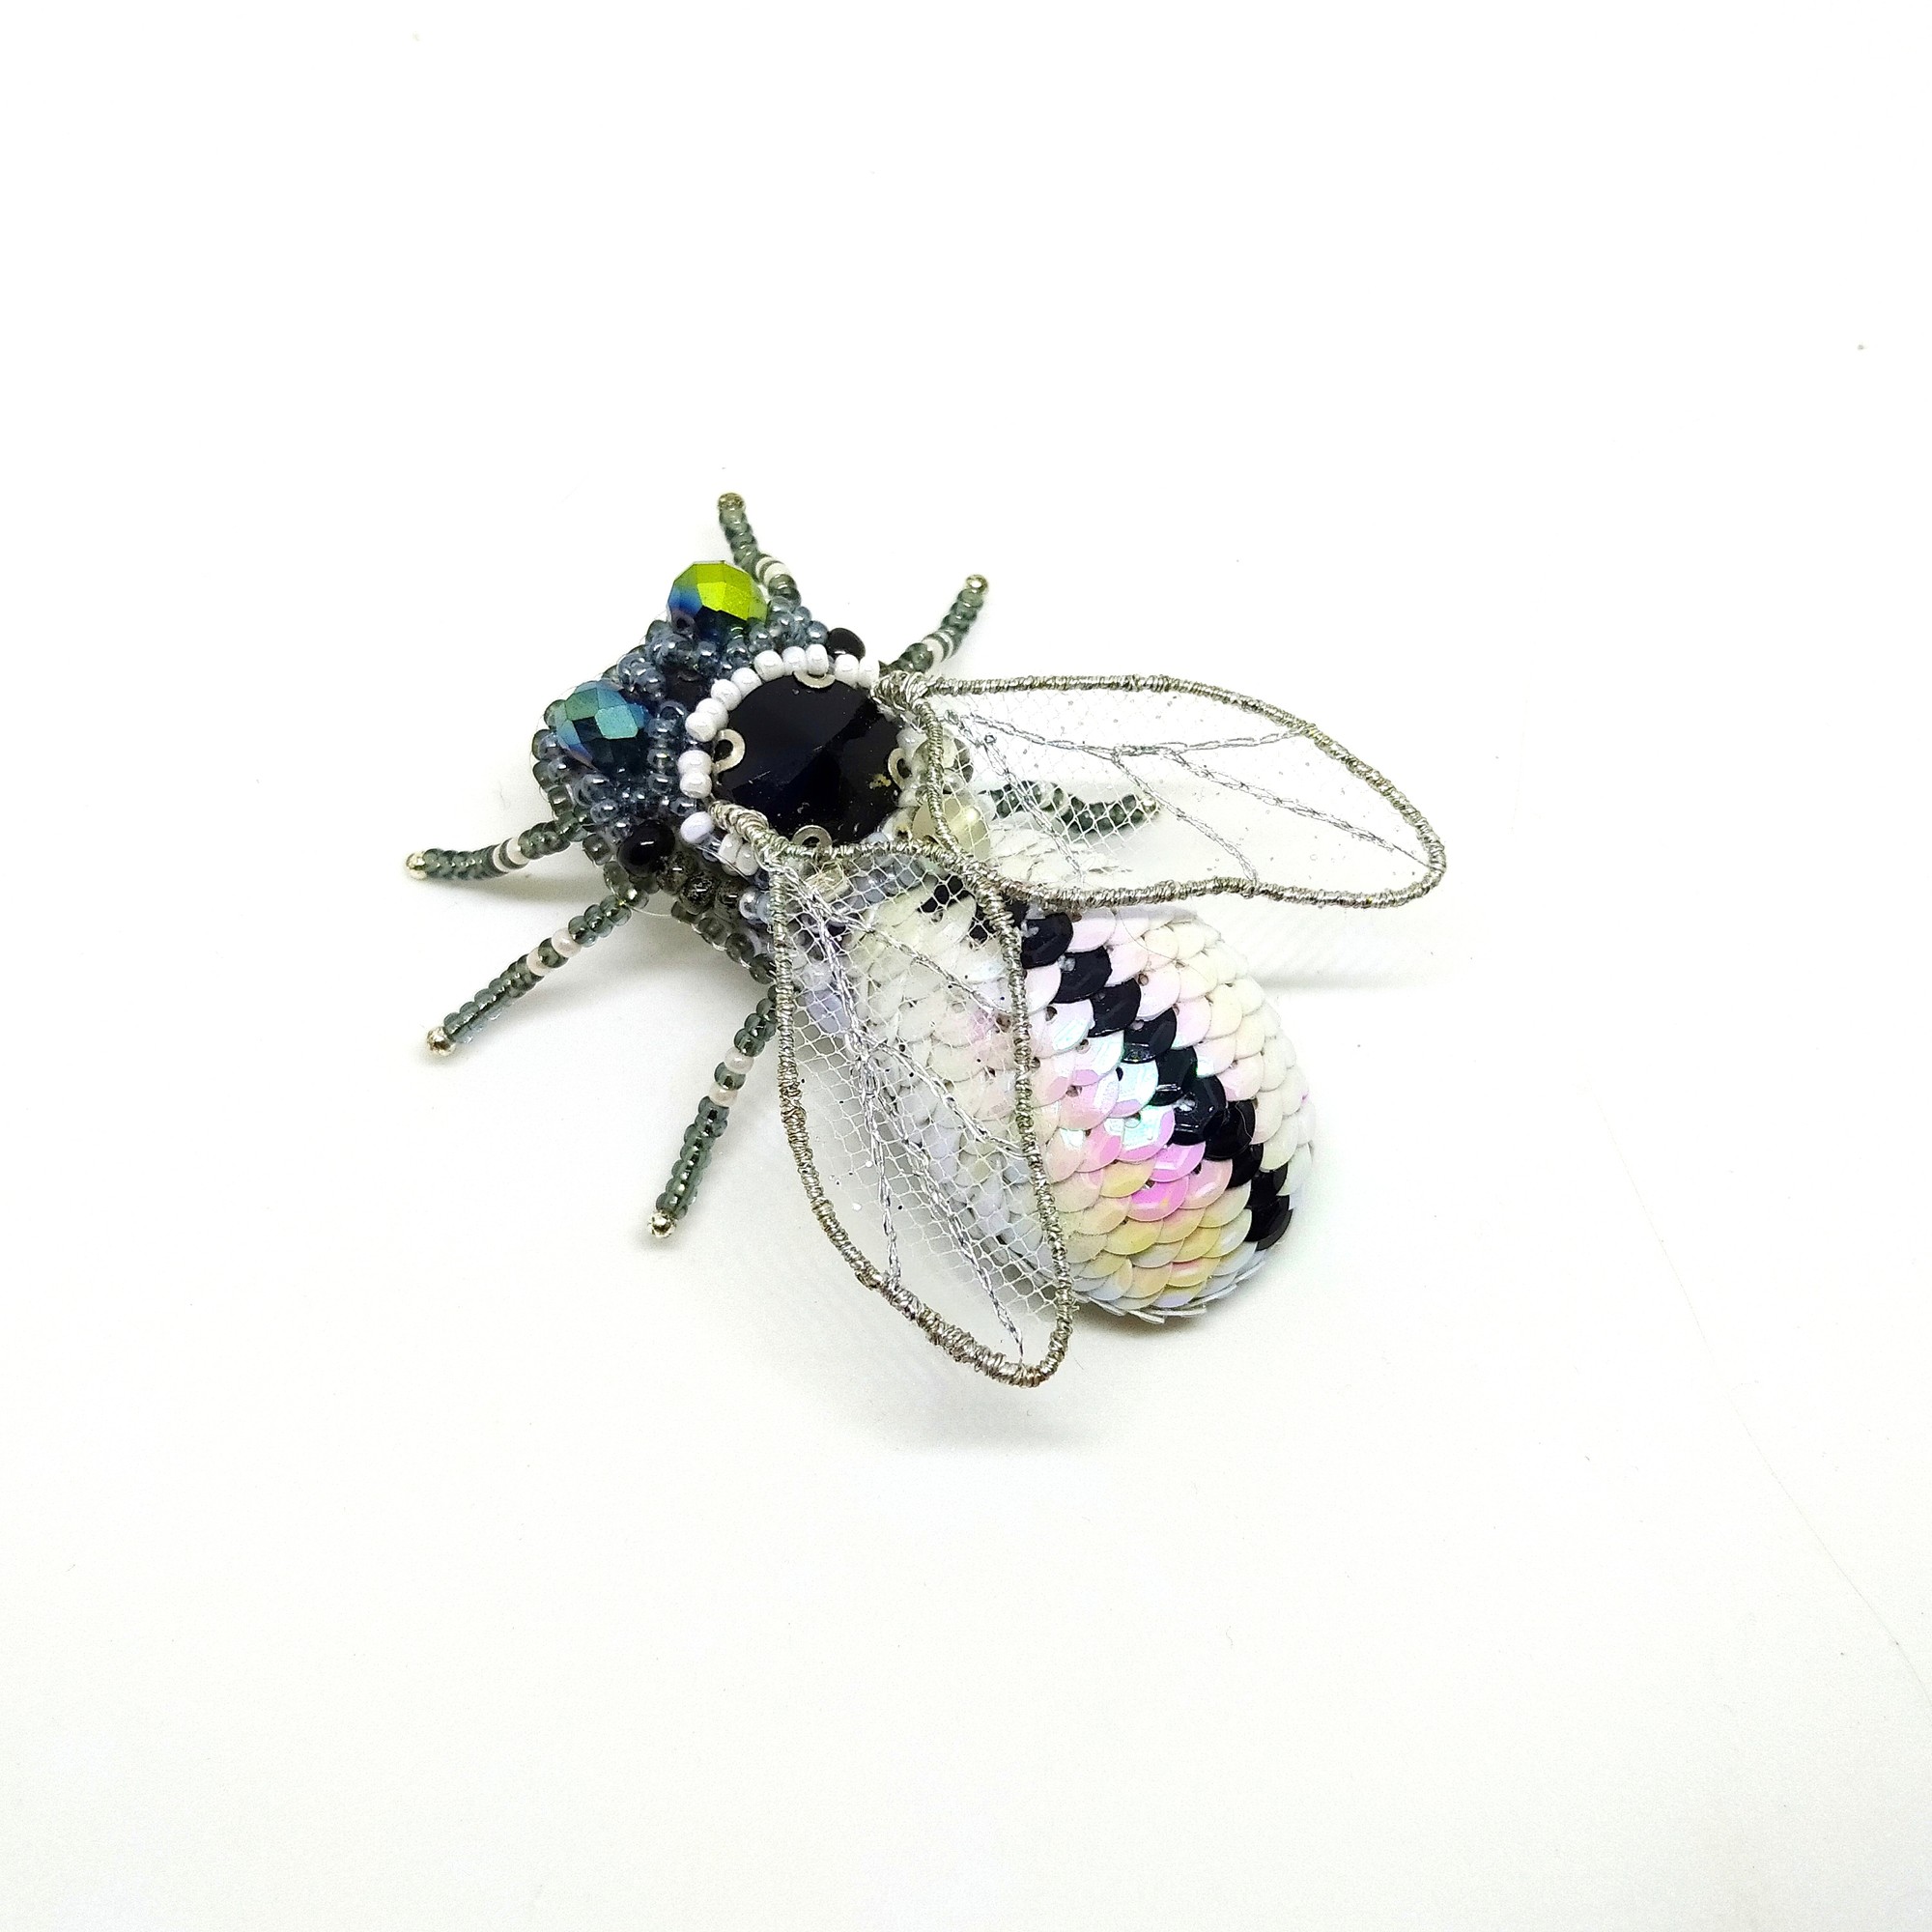 Handmade brooch "the fly"